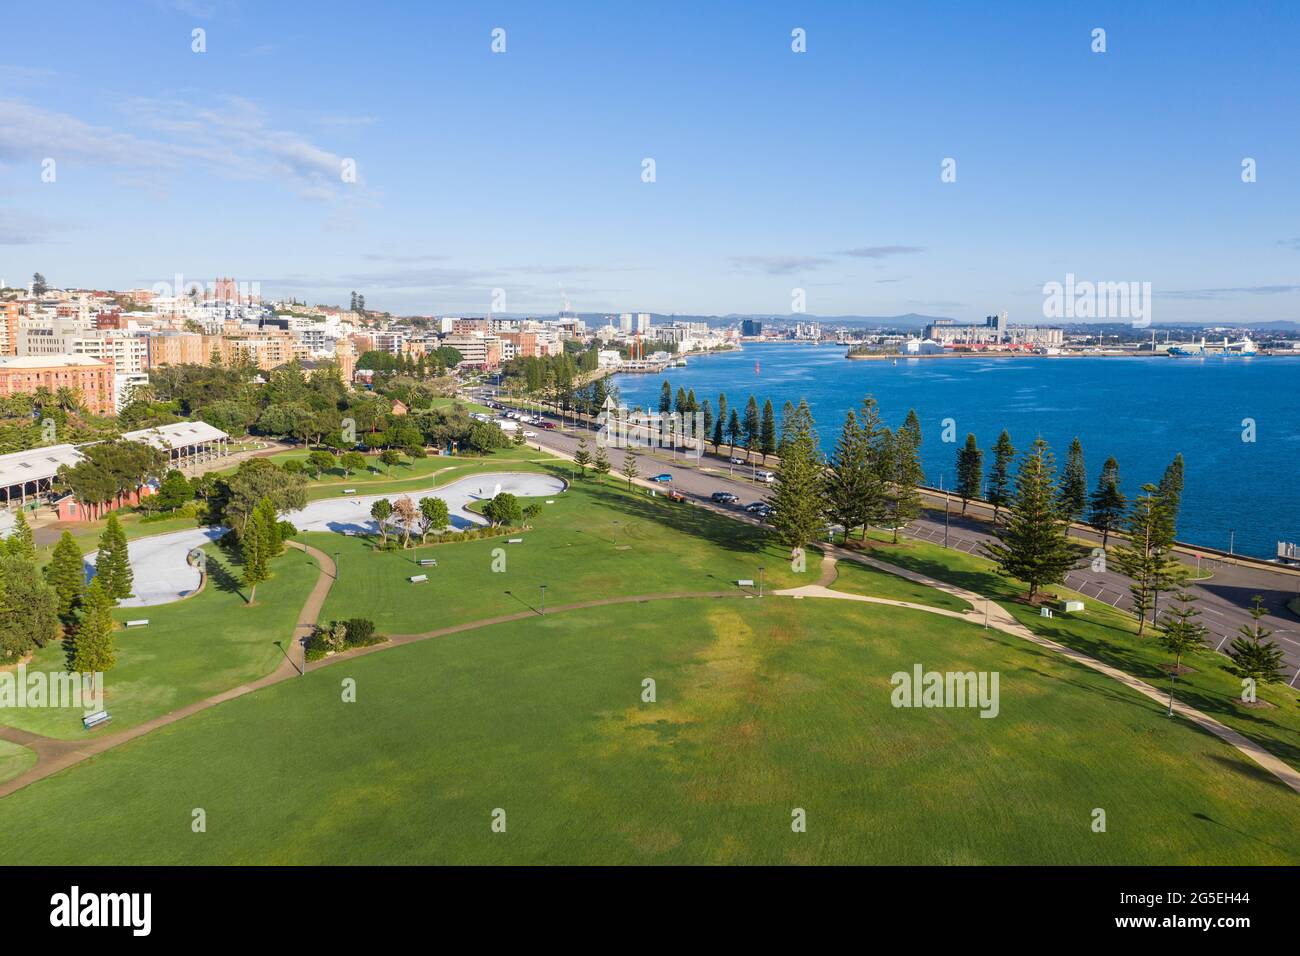 Vista aerea del parco e del paesaggio urbano adiacente al porto di Newcastle e al fiume Hunter a Newcastle - NSW Australia Foto Stock